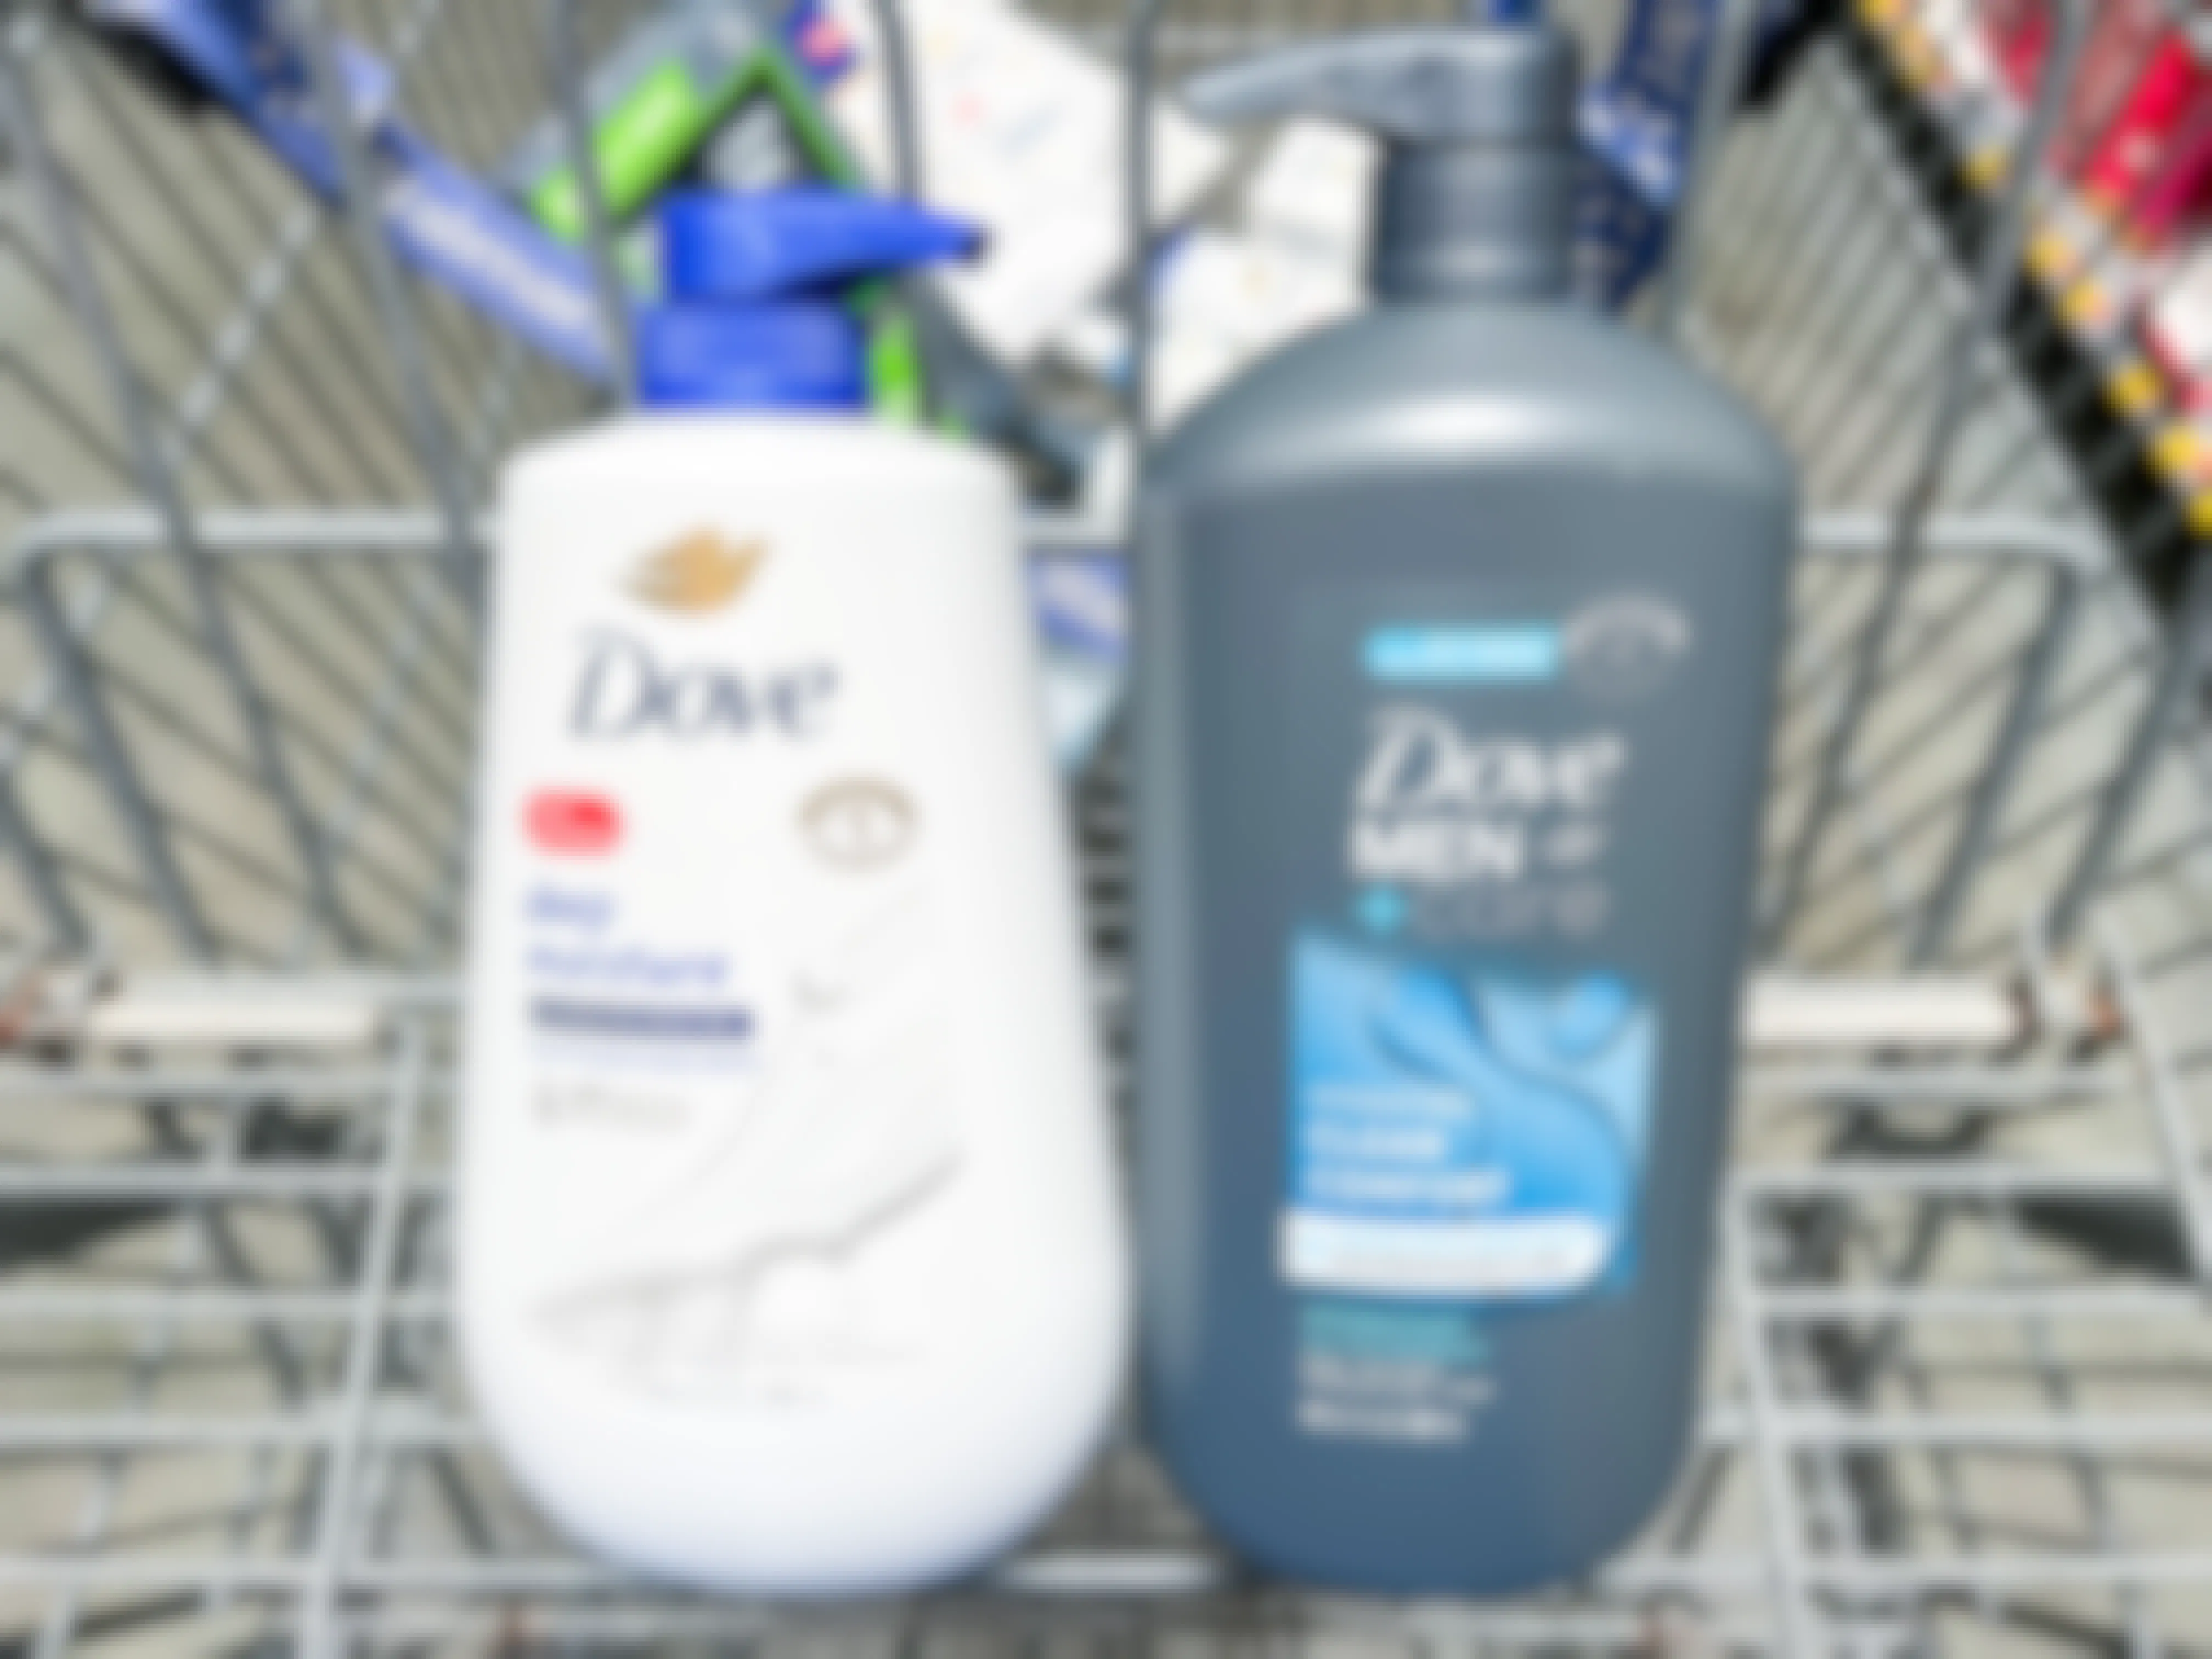 dove and dove men + care body wash